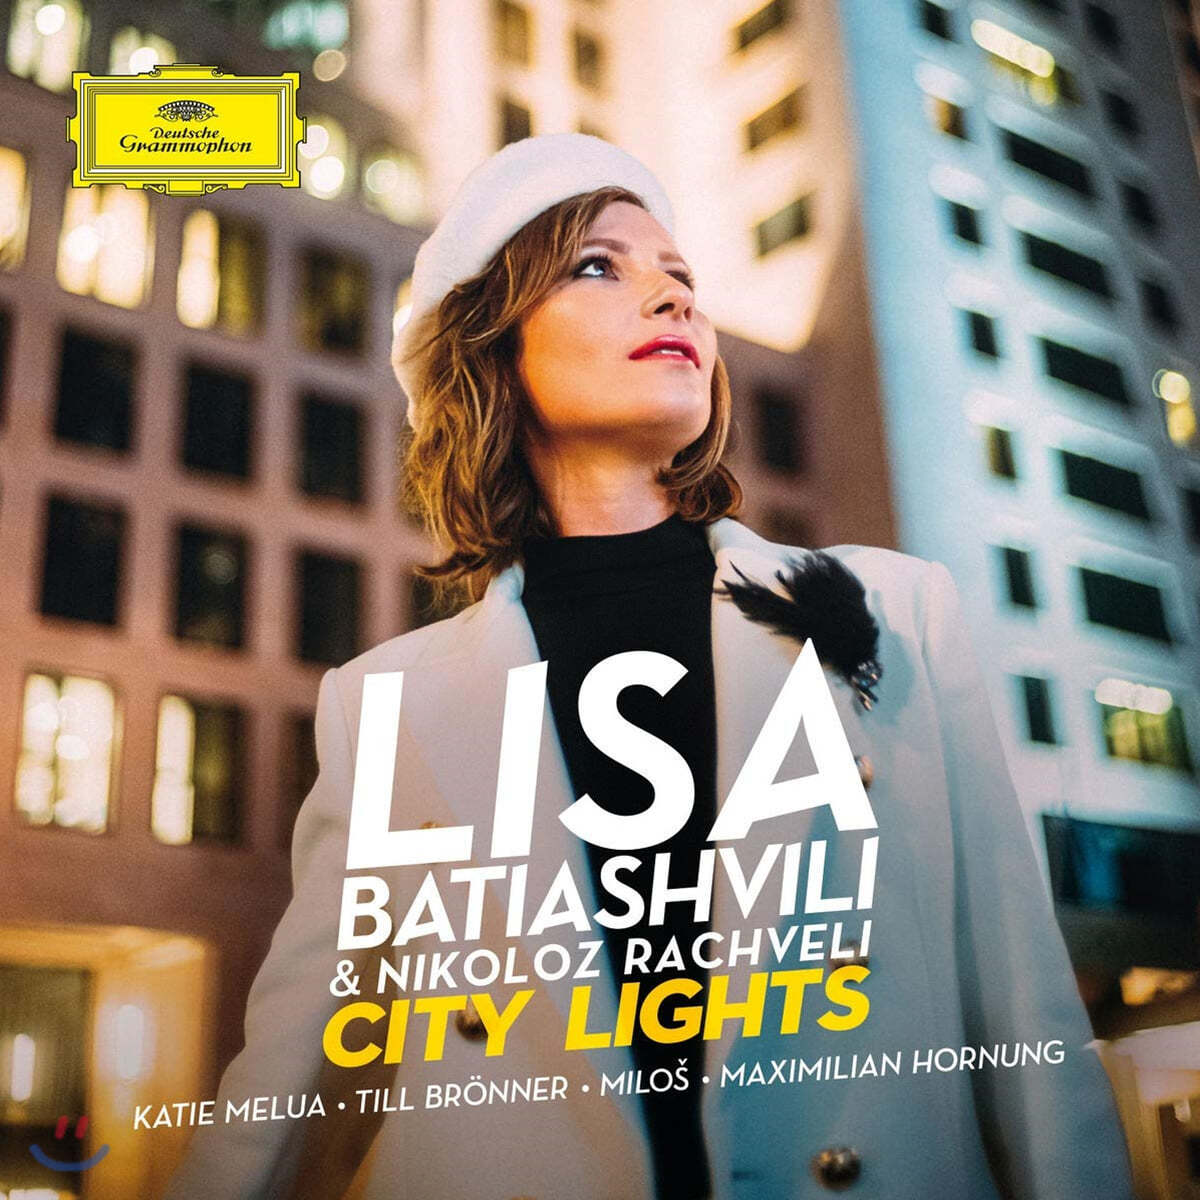 Lisa Batiashvili 찰리 채플린과 11개 도시의 바이올린 소품 - 리사 바티아슈빌리 (City Lights)